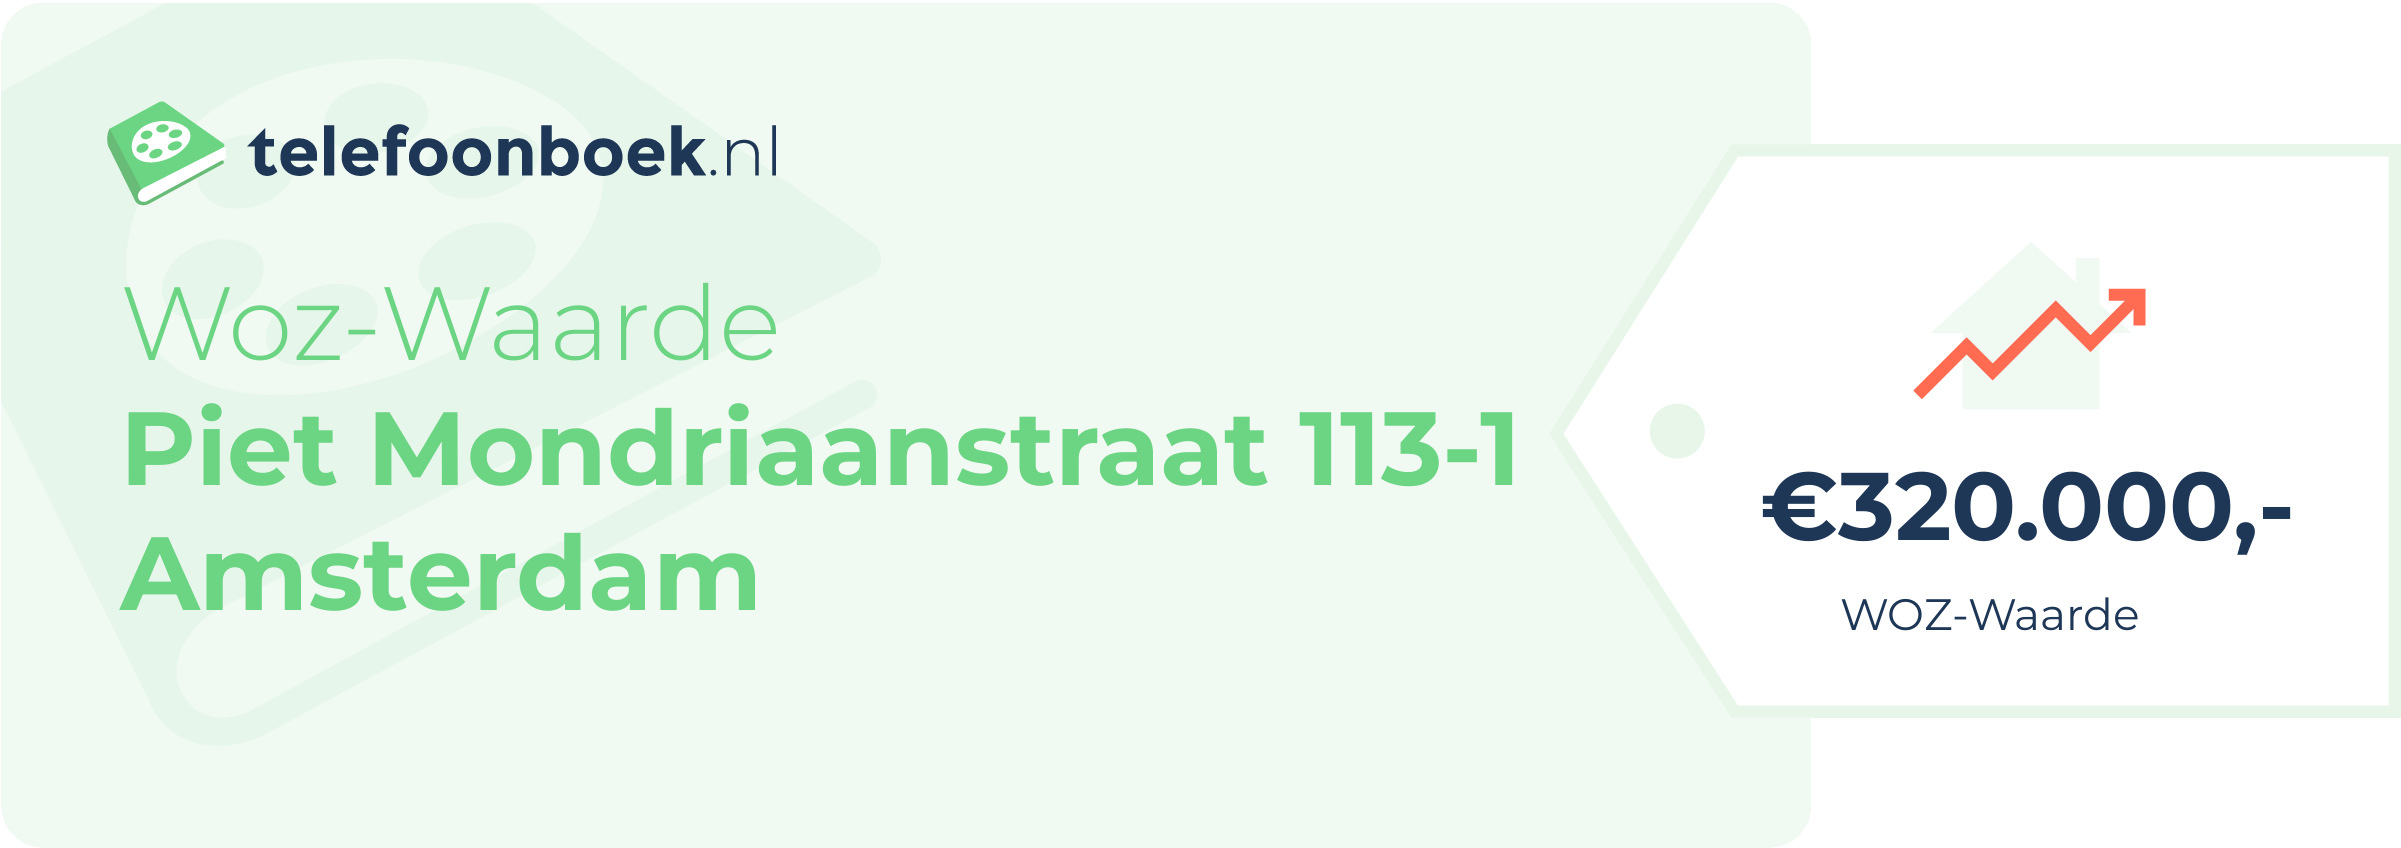 WOZ-waarde Piet Mondriaanstraat 113-1 Amsterdam